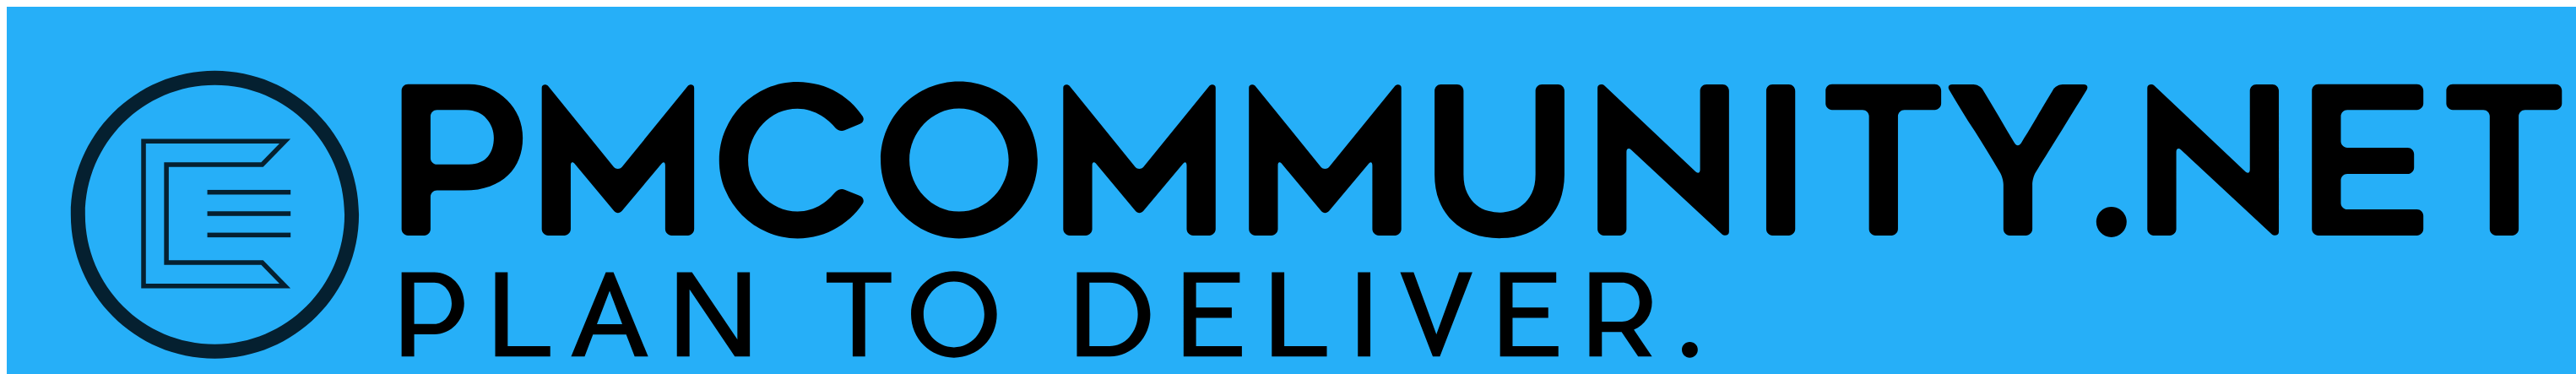 PMCommunity.net Logo